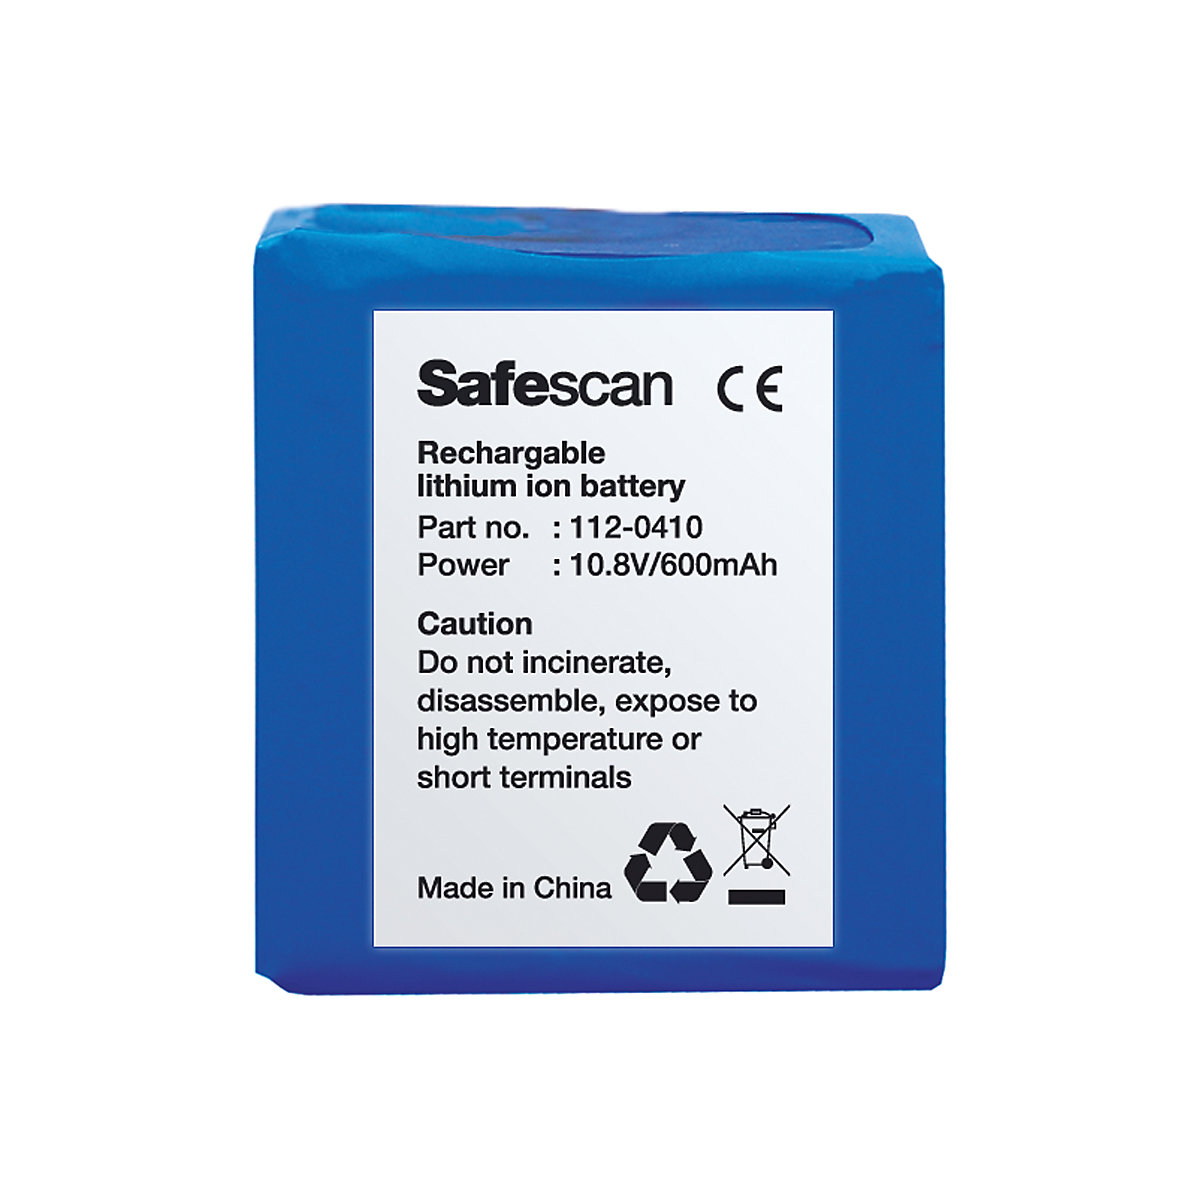 Batería recargable - Safescan